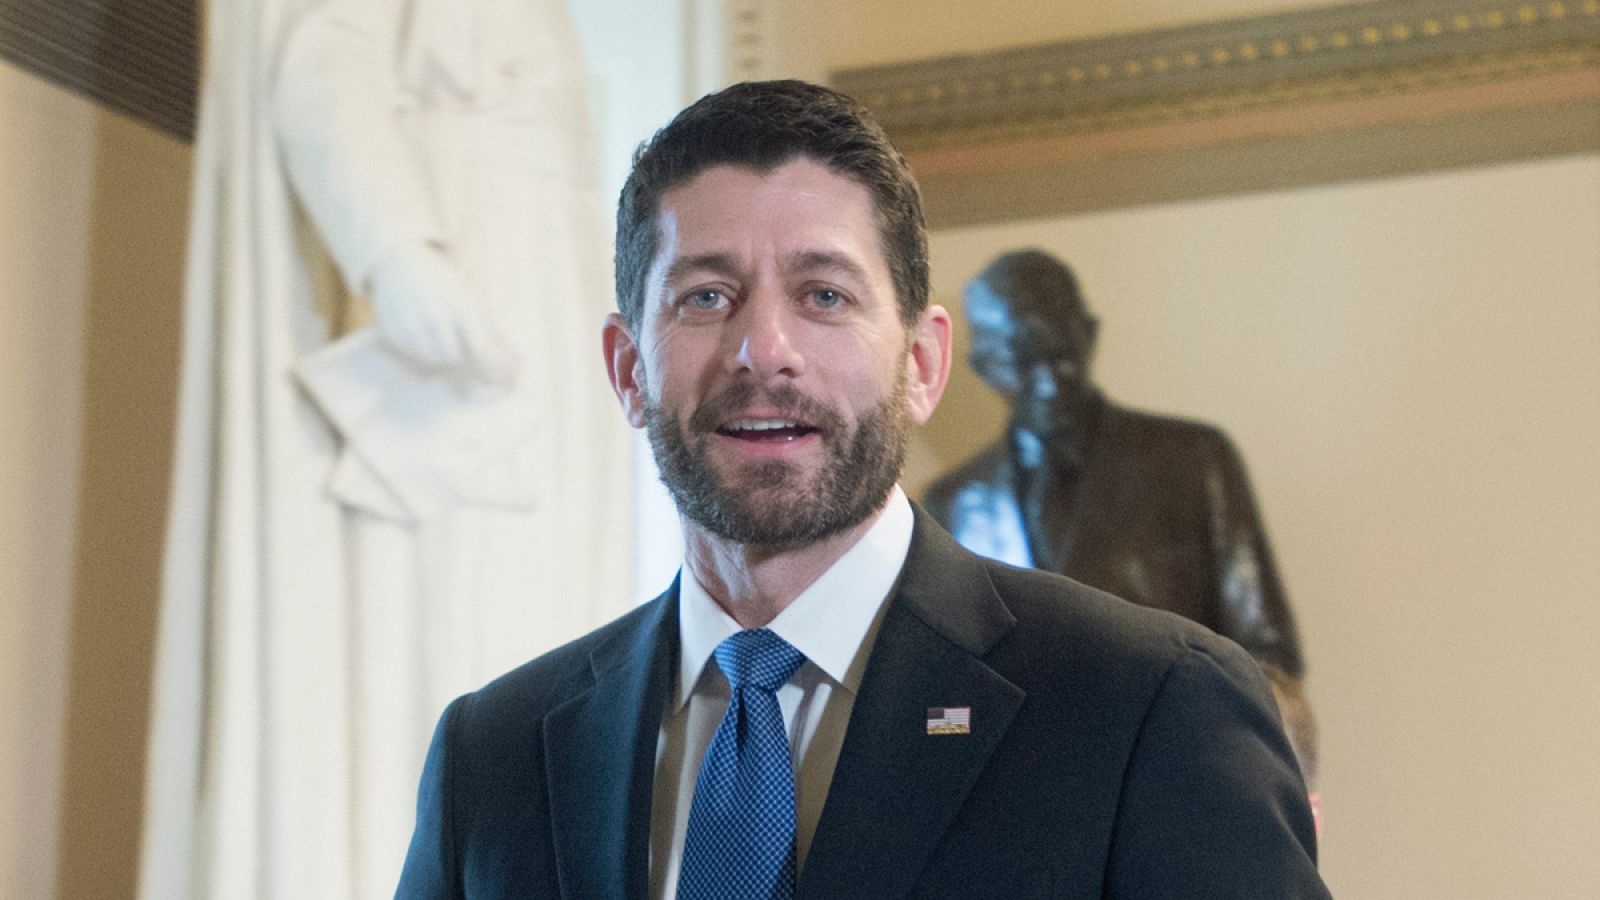 El presidente de la Cámara de Representantes de EE.UU., Paul Ryan, en el Capitolio de Washington